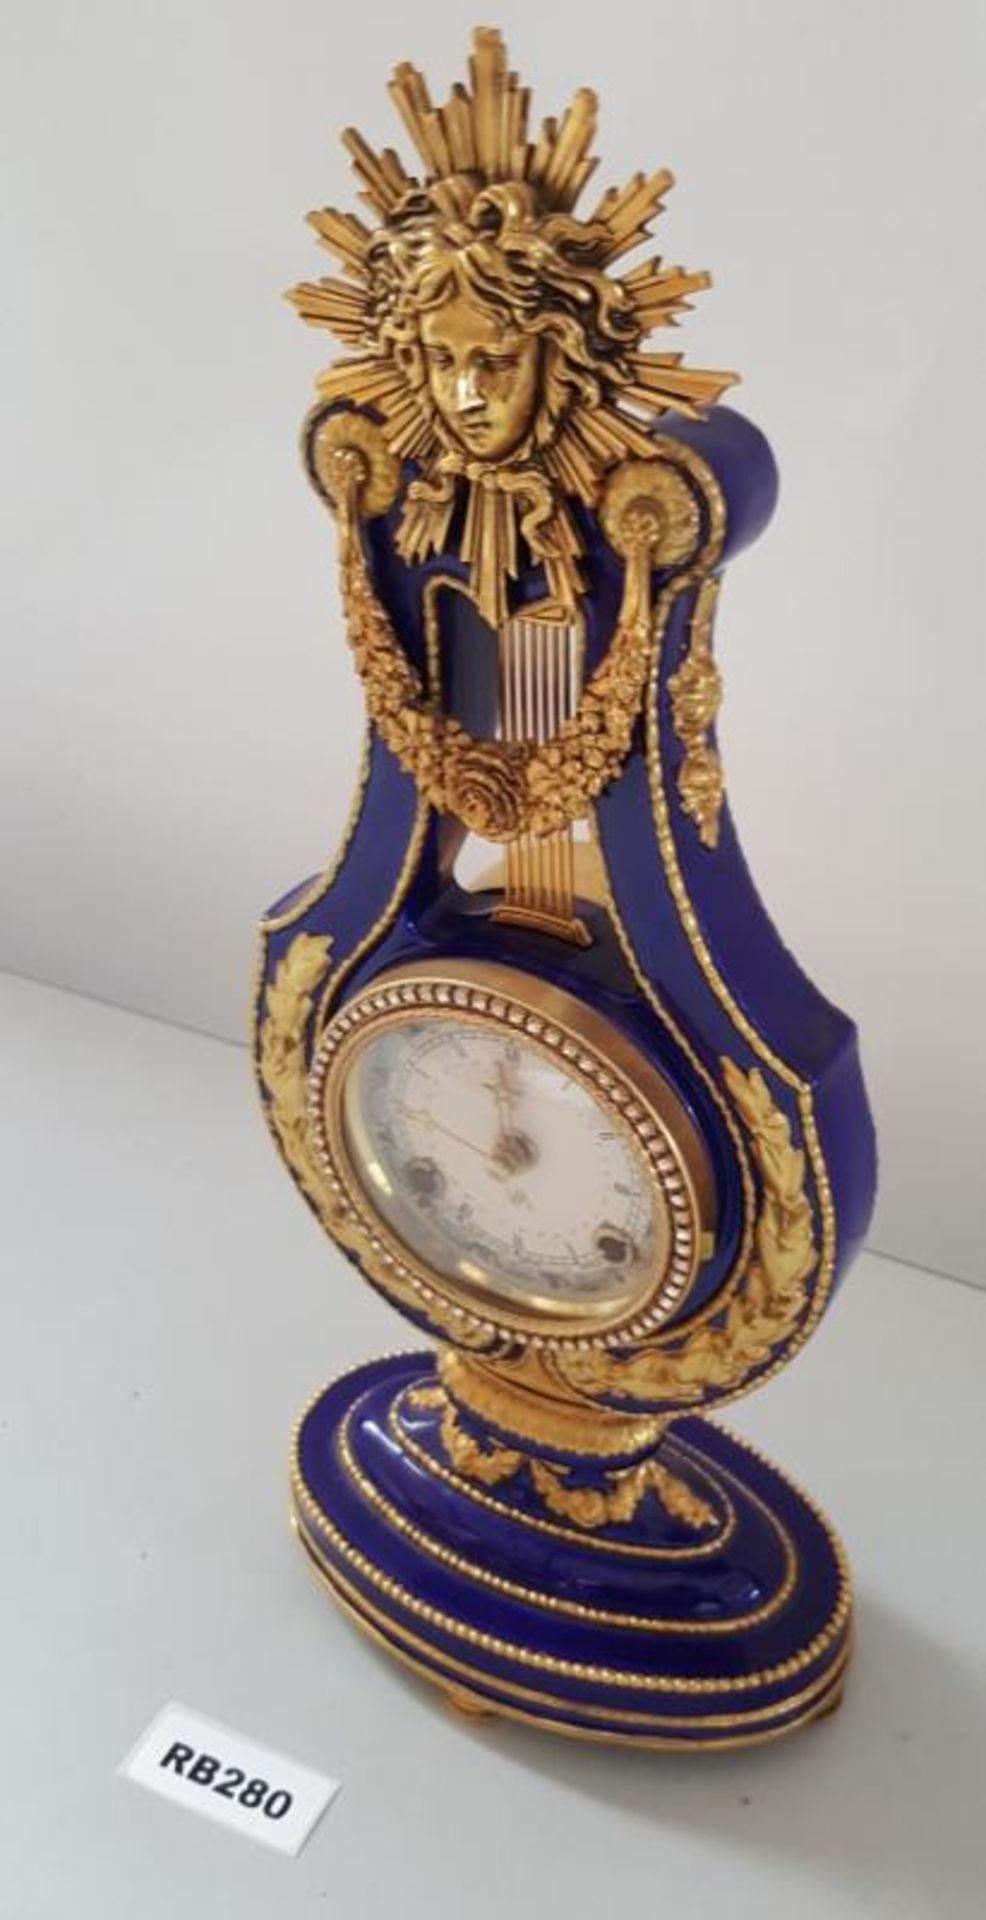 1 x Marie-Antoinette Fine Porcelain Clock - Ref RB280 E - Dimensions: H38/L15/W10 cm - CL334 - Locat - Image 3 of 6